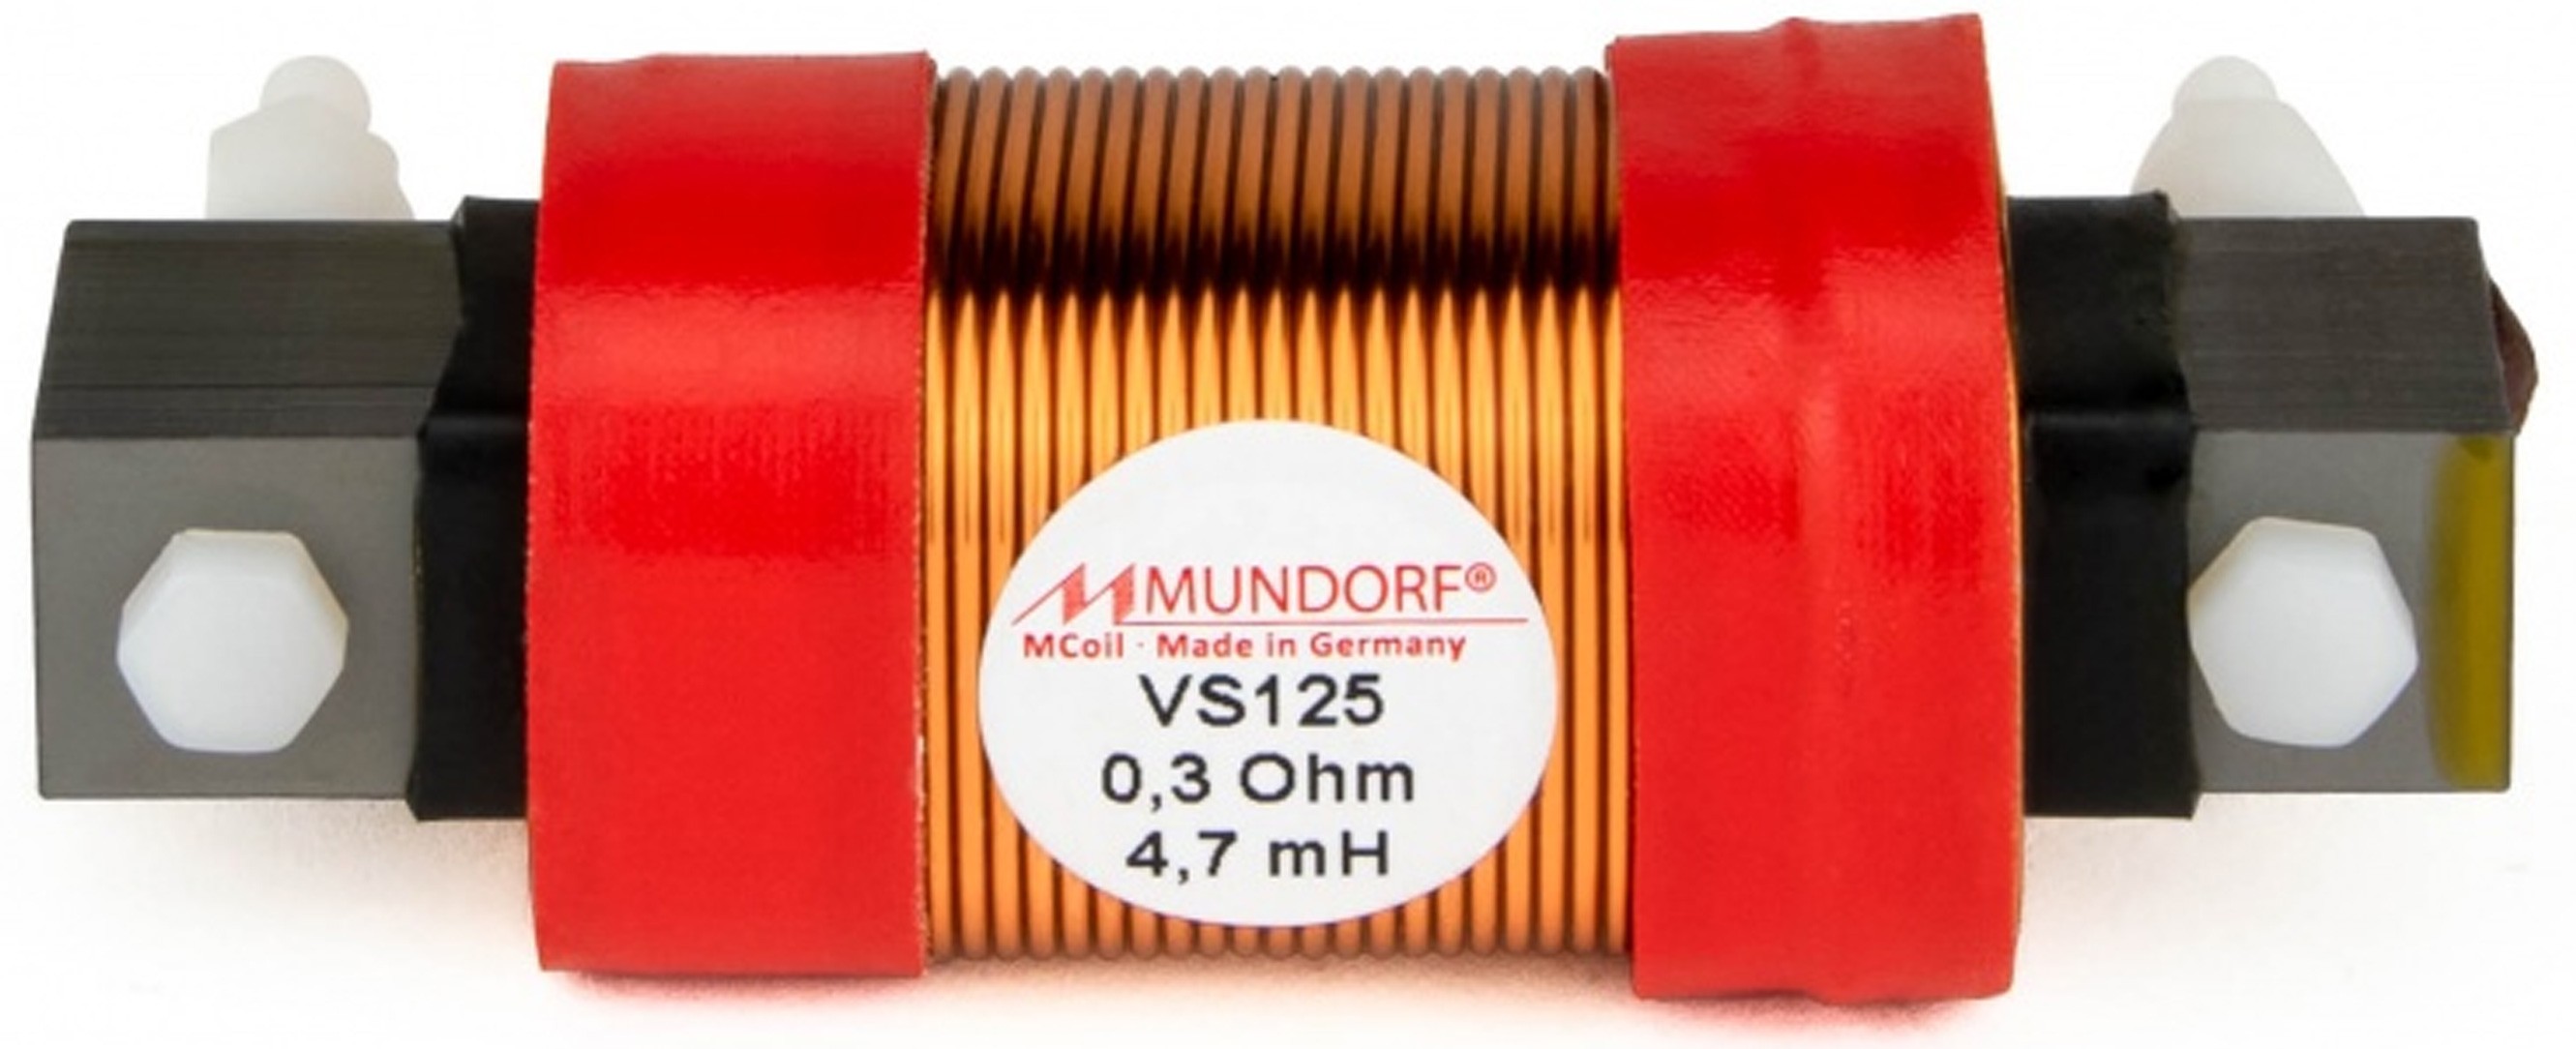 MUNDORF VS125-5.6 MCOIL ICORE Copper Coil Feron Core 5.6mH